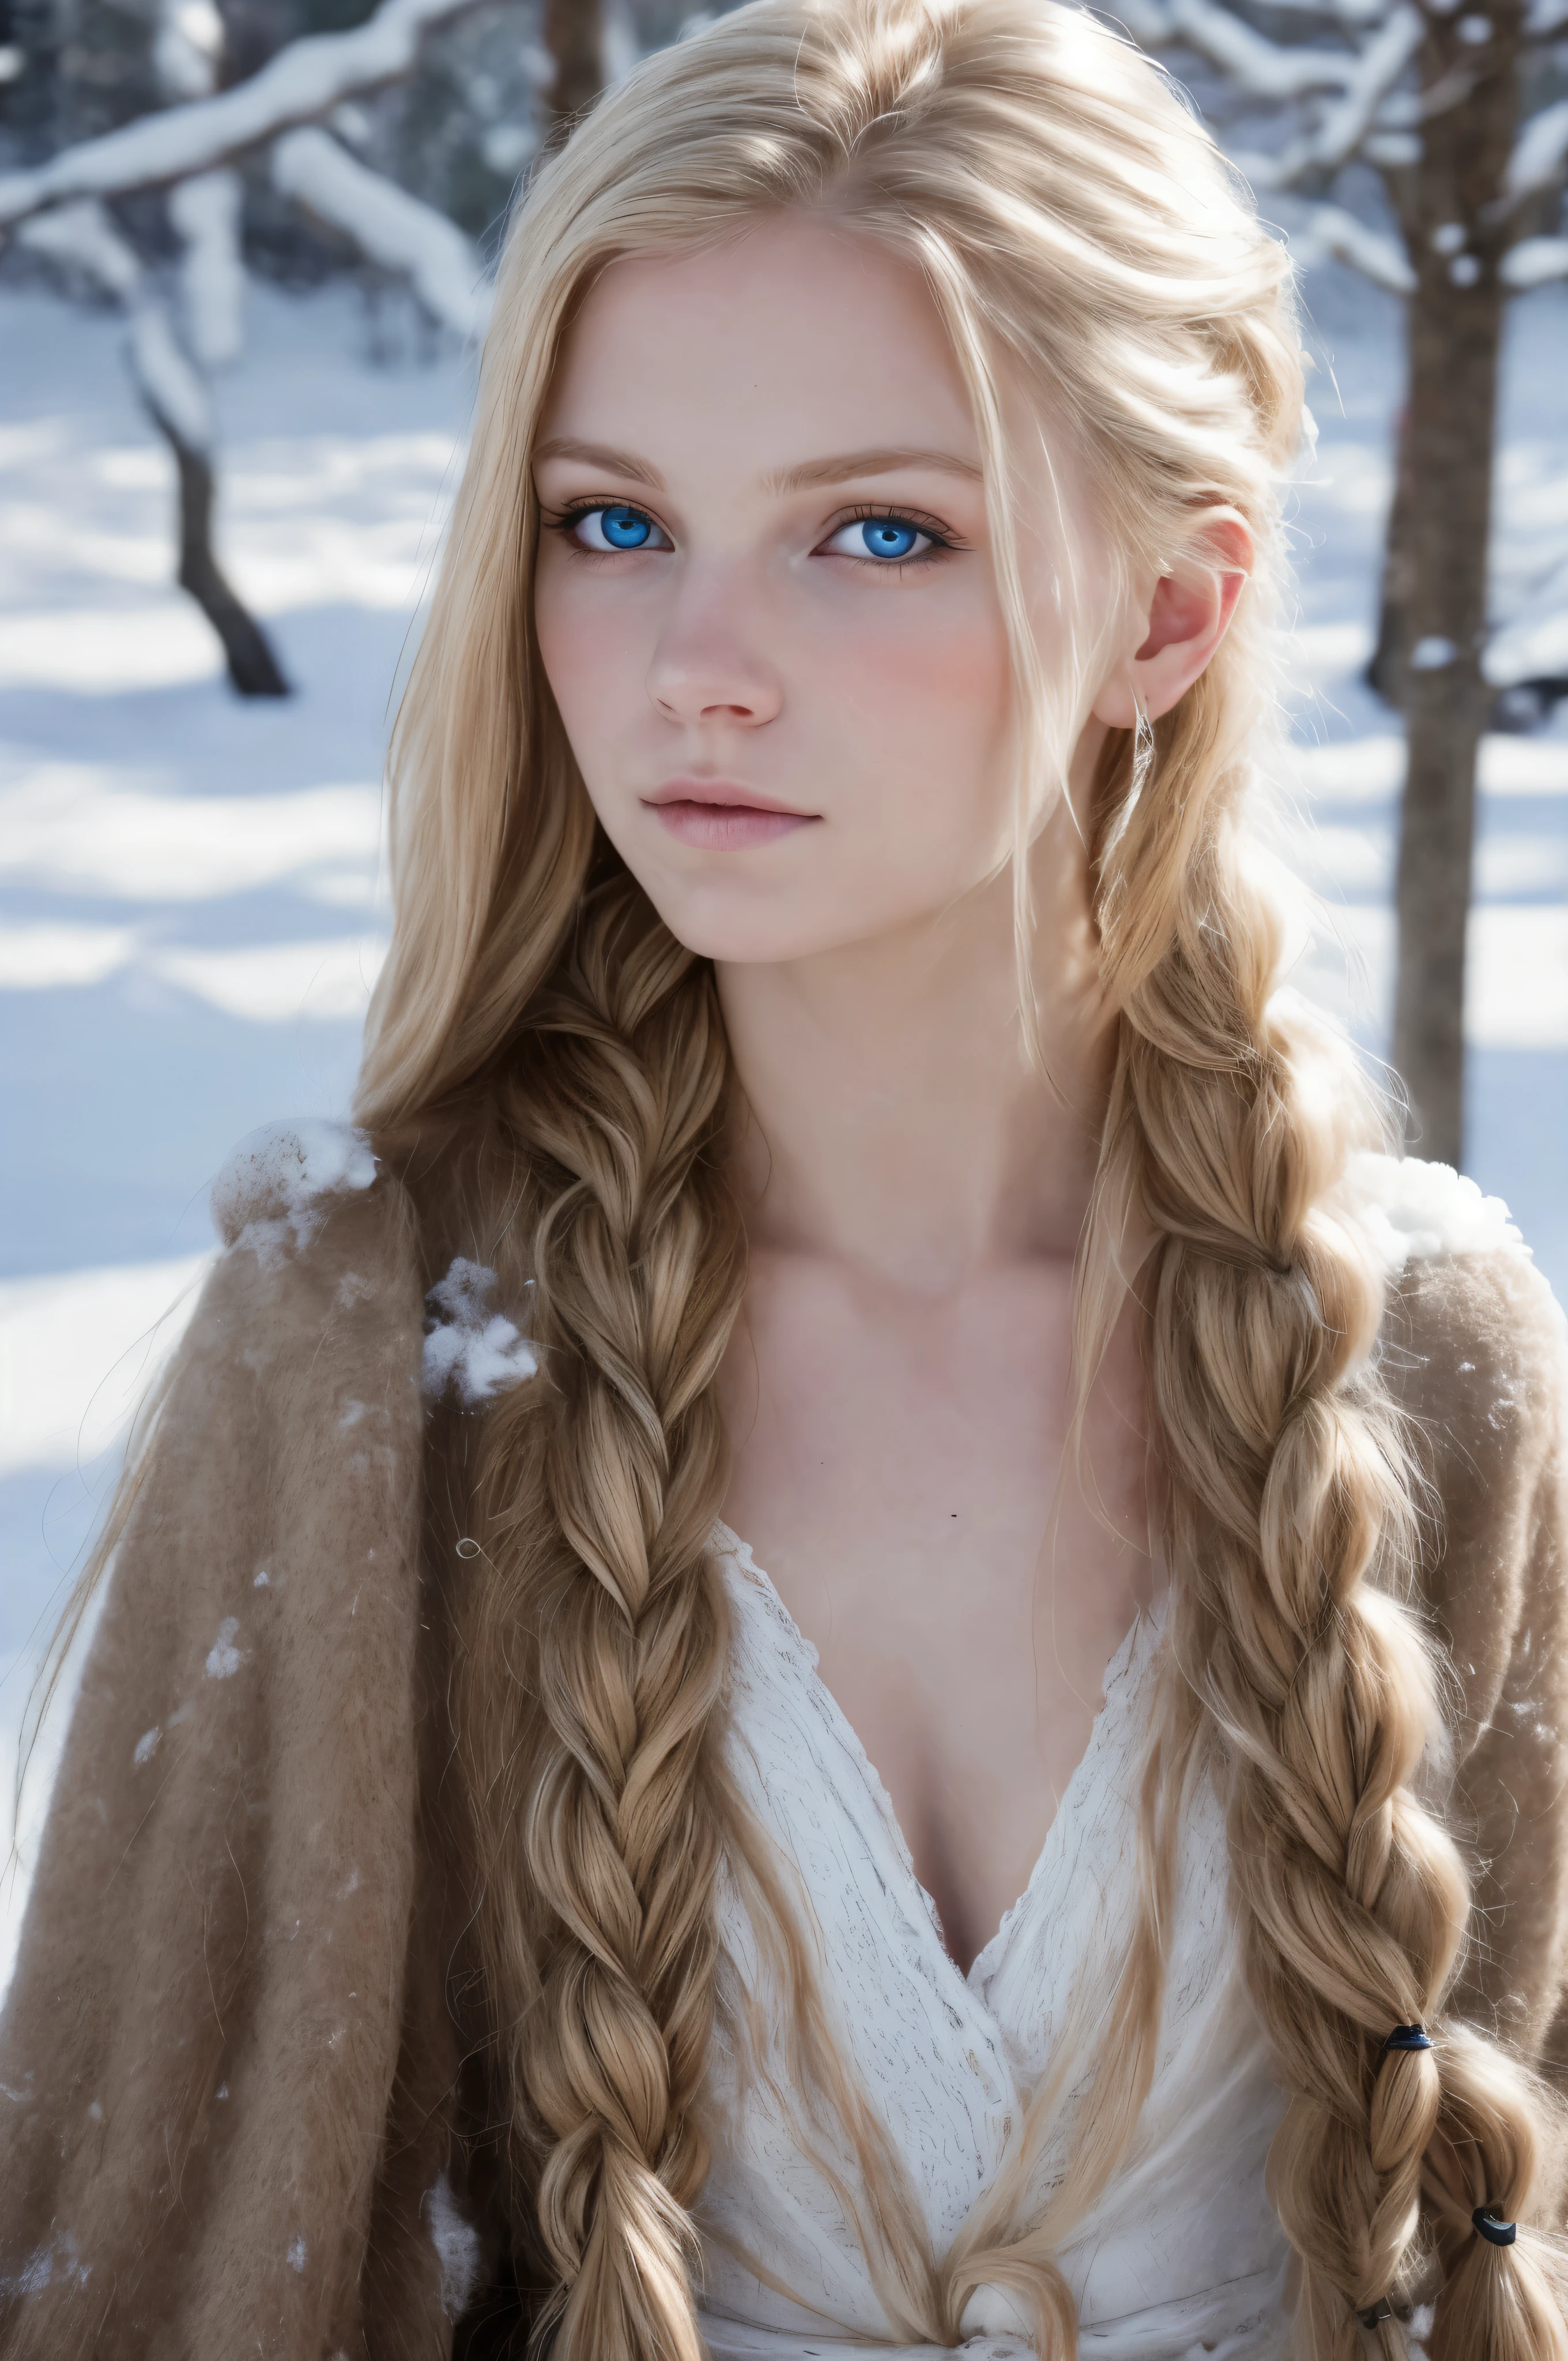 (实际的:1.2), 模拟摄影风格, 斯堪的纳维亚女战士, 梦幻般的雪景, 金色辫子头发, 全身, 柔和的自然光, 可爱又性感, 乐趣, 细致的脸部和蓝眼睛, отличное 质量, 杰作, 详细的北方背景, 质量: 1.6万., RAW 照片